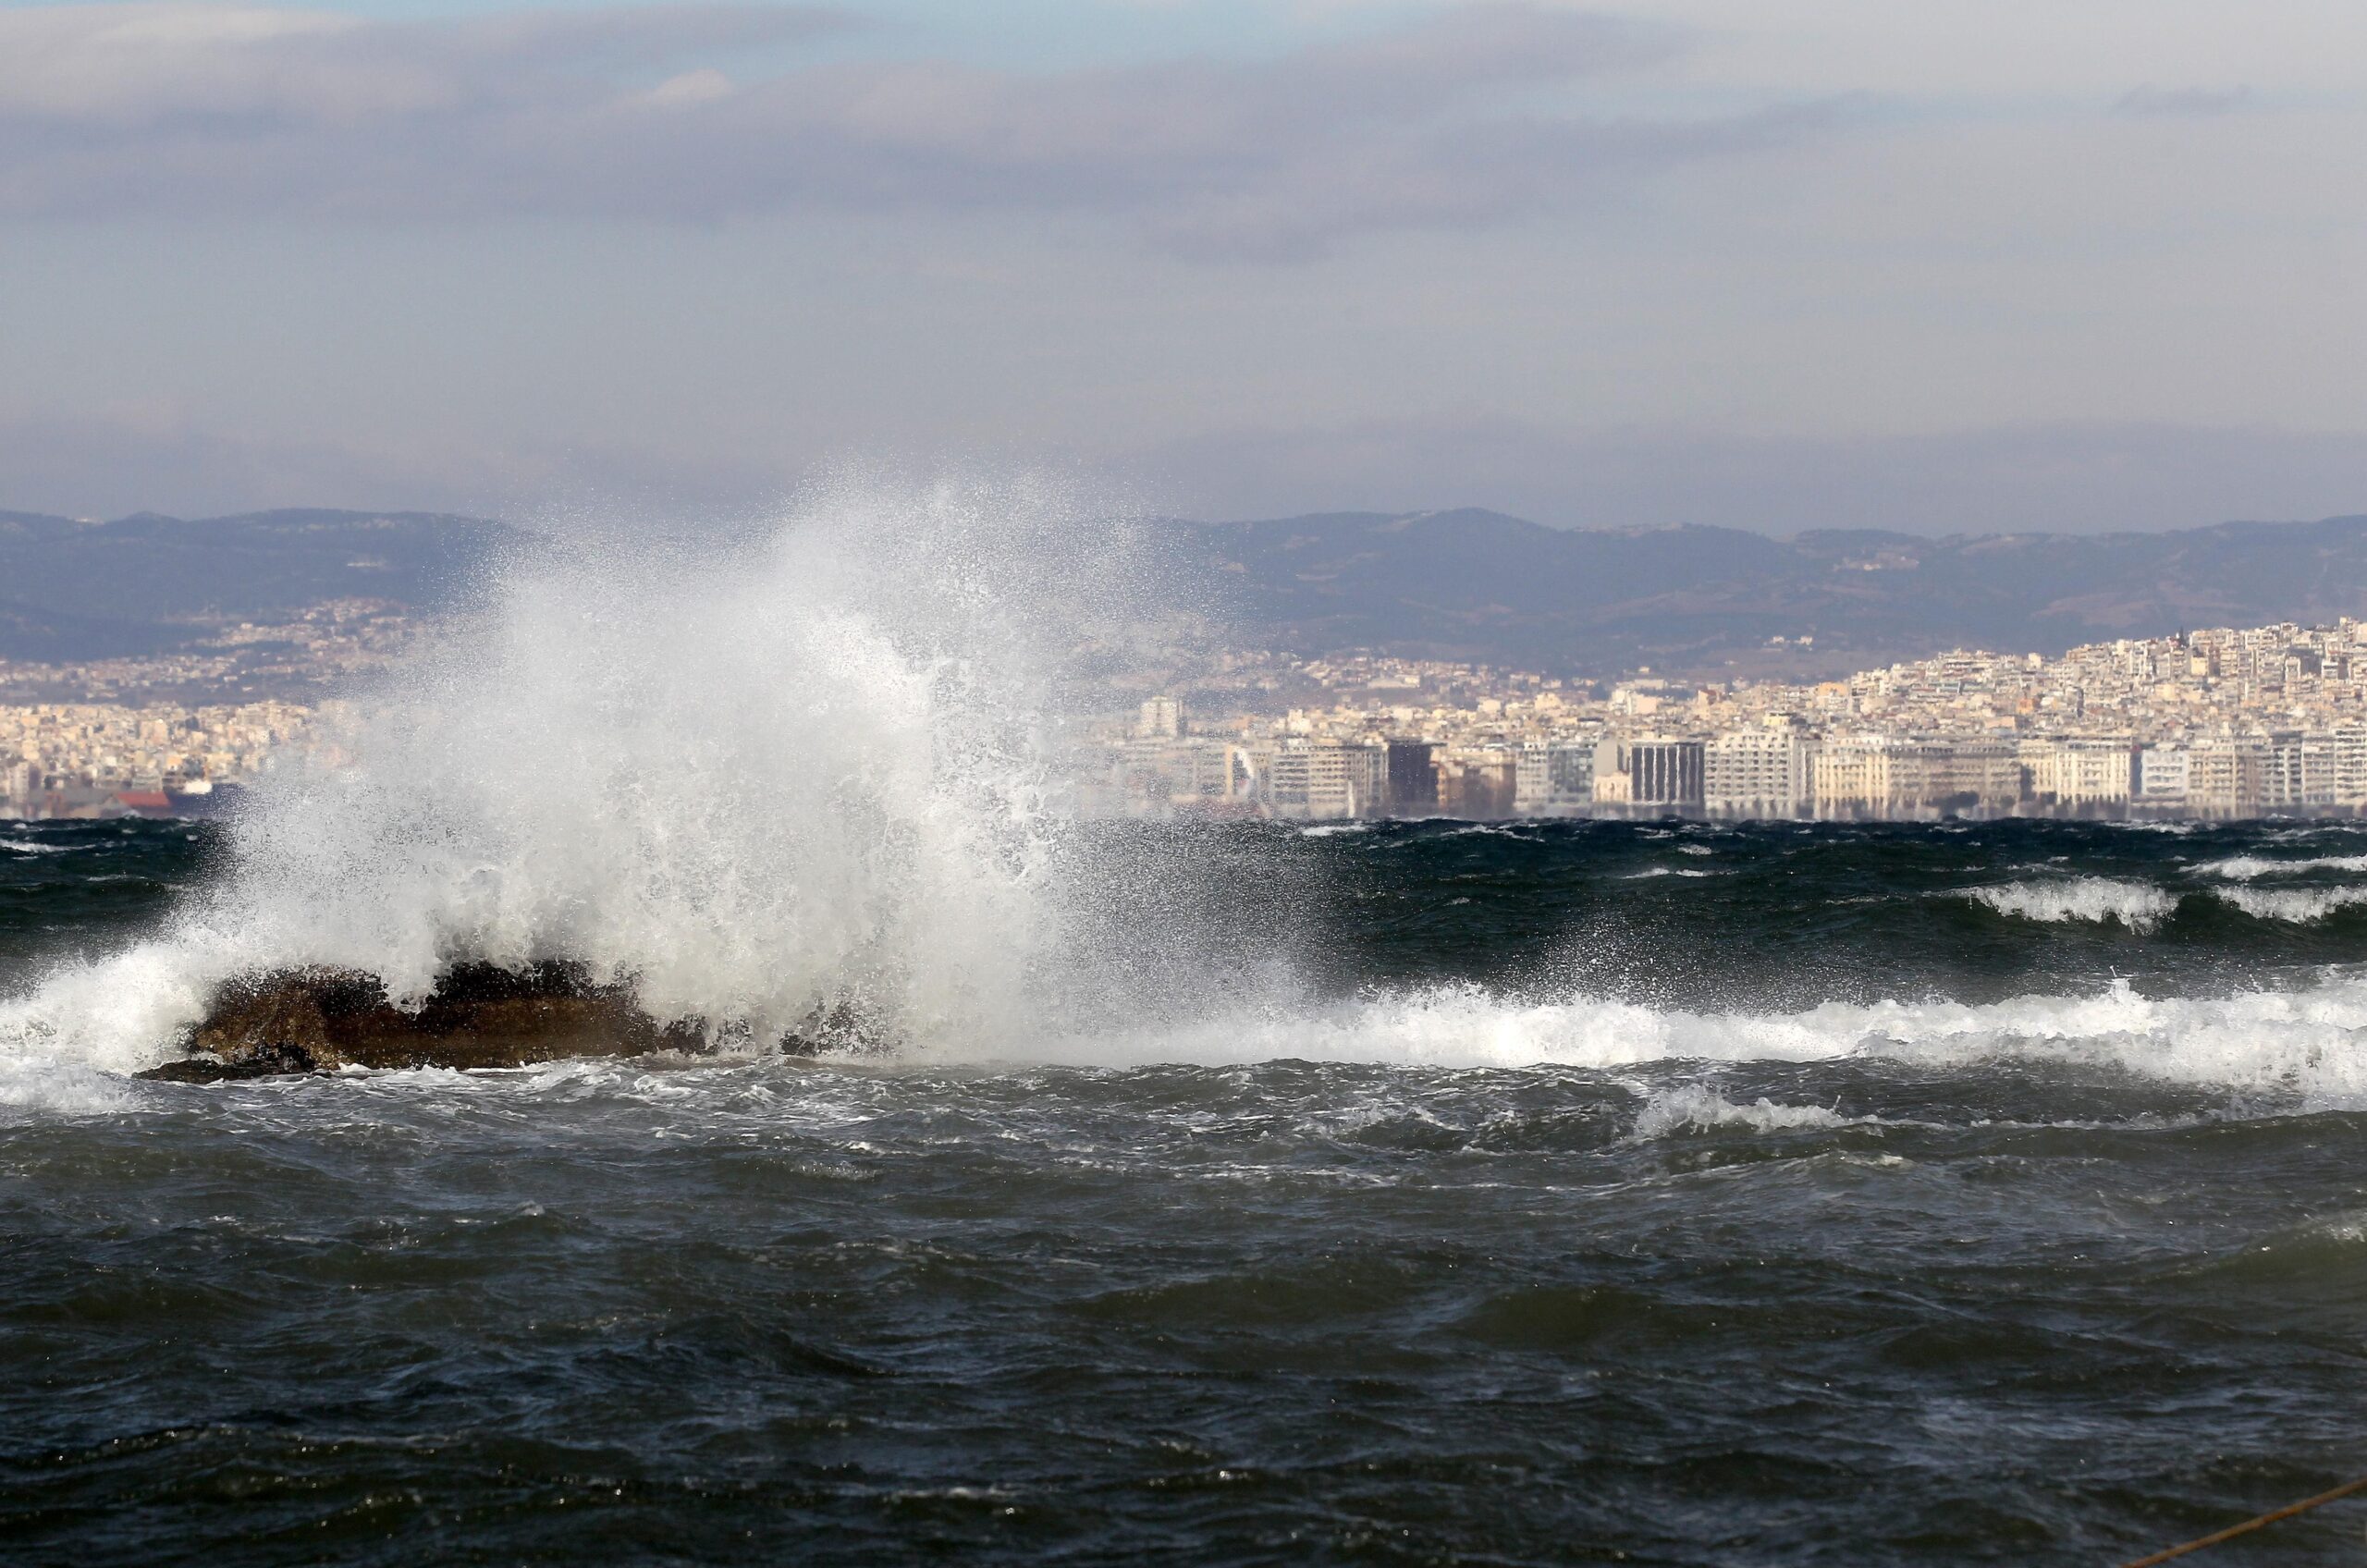 Θεσσαλονίκη: Ξανά στη «μάχη» καθαρισμού του Θερμαϊκού κόλπου η ΕΥΑΘ ΑΕ με το ειδικό πλωτό «Αλκίππη»